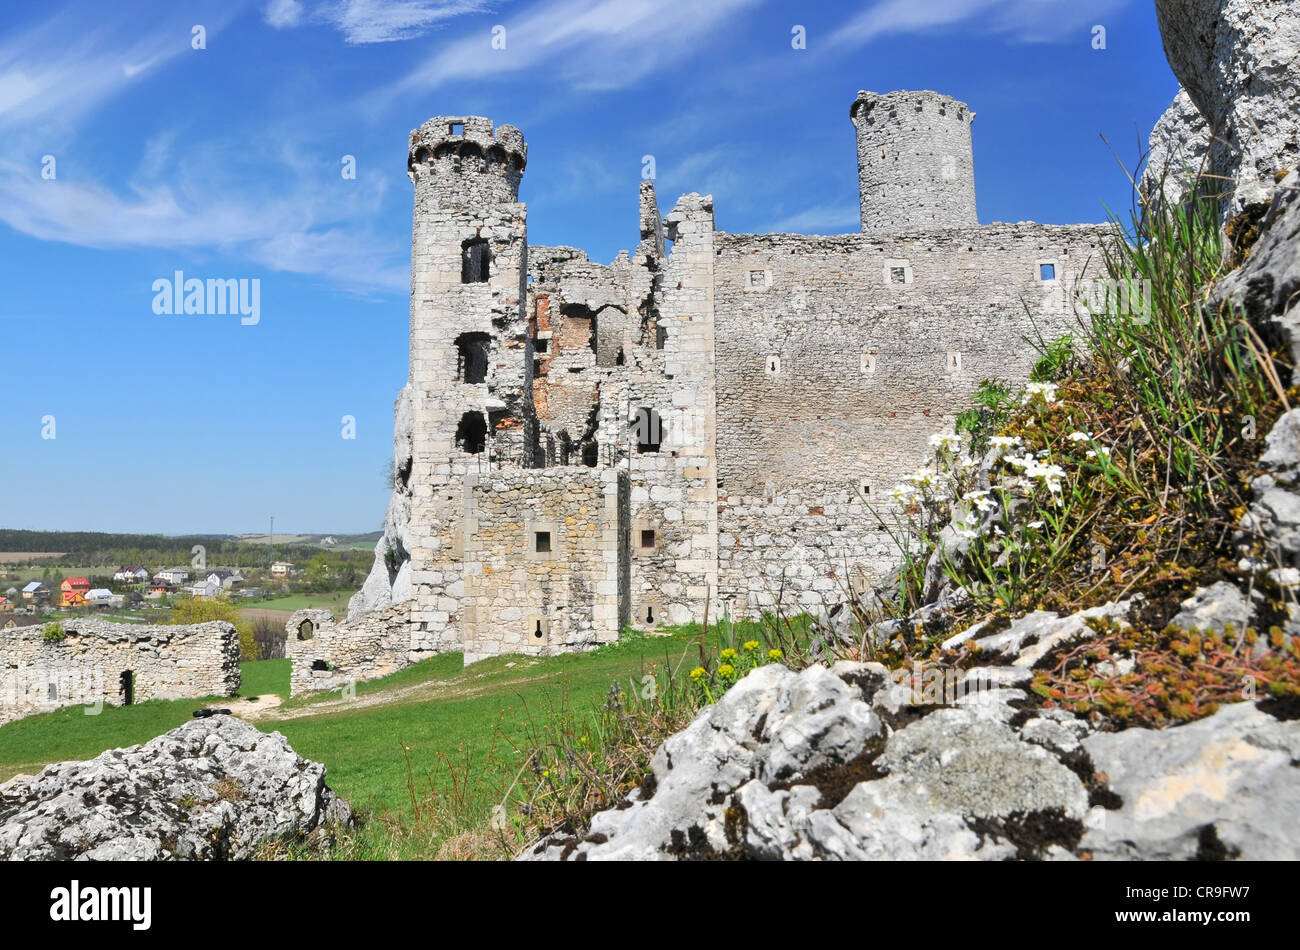 Ruines du château médiéval de Ogrodzieniec Pologne Banque D'Images